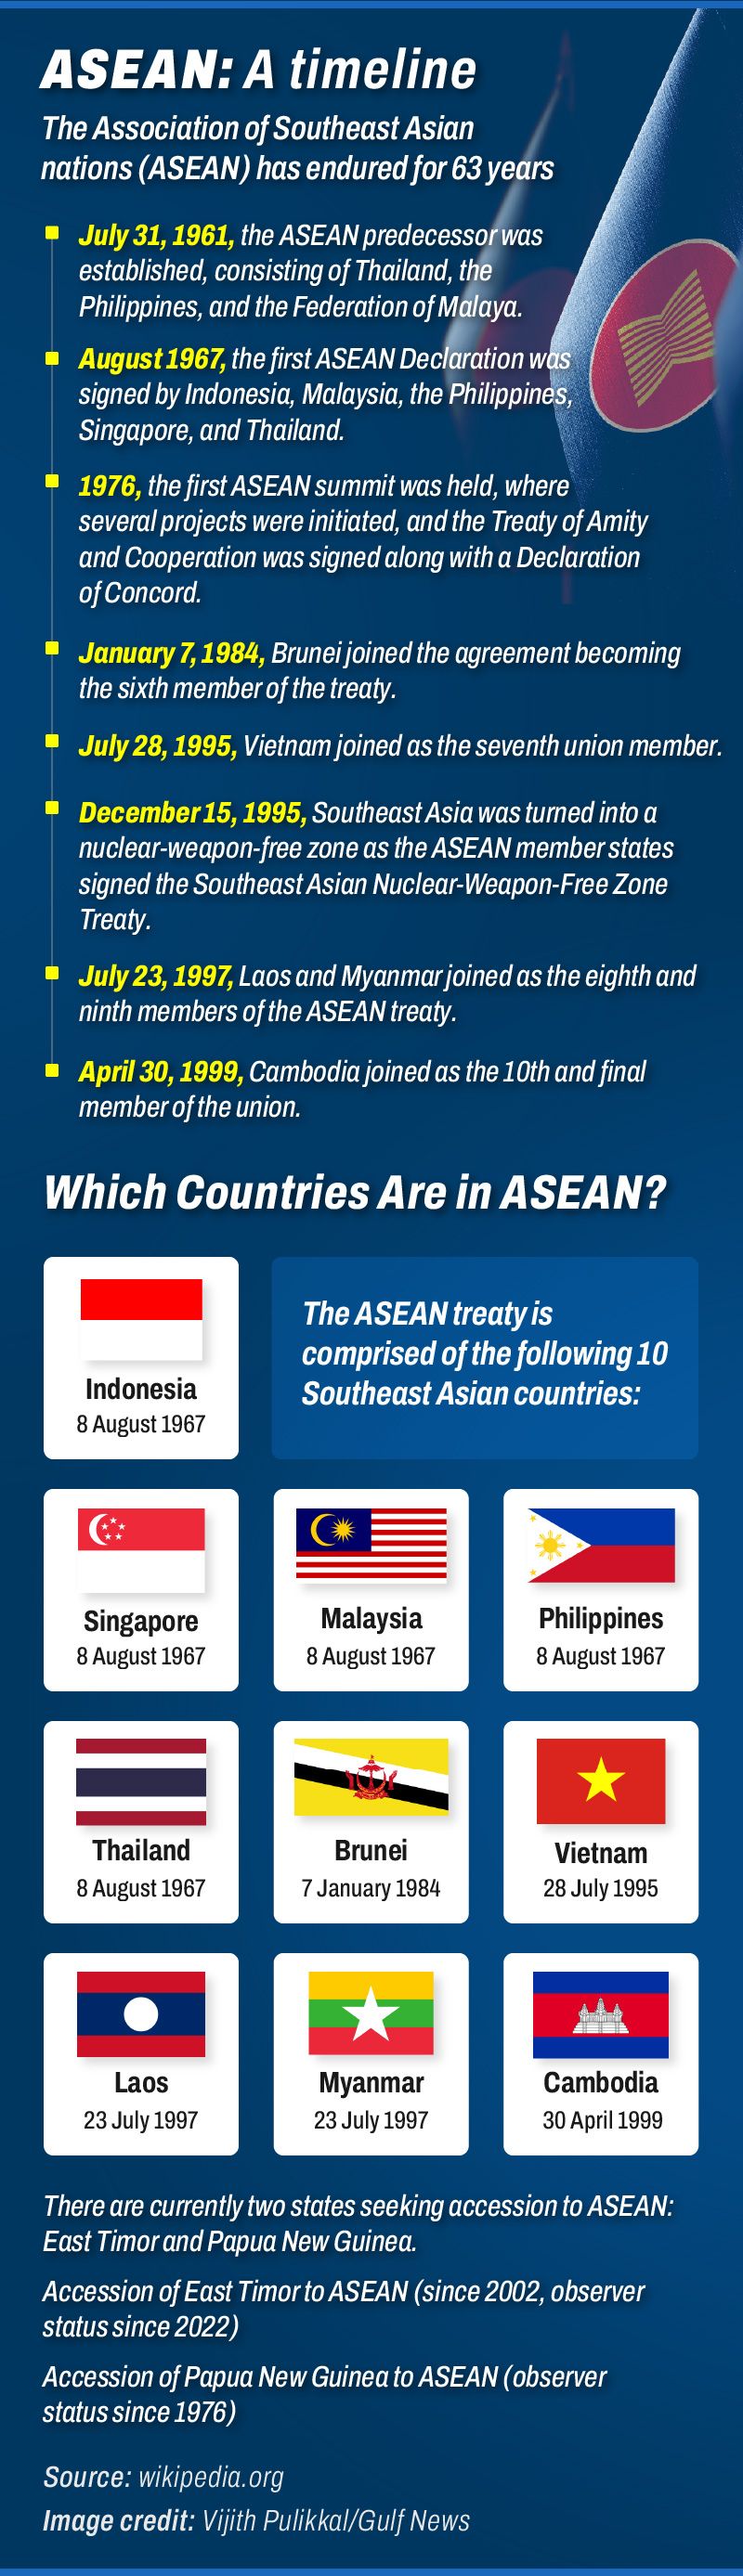 ASEAN members